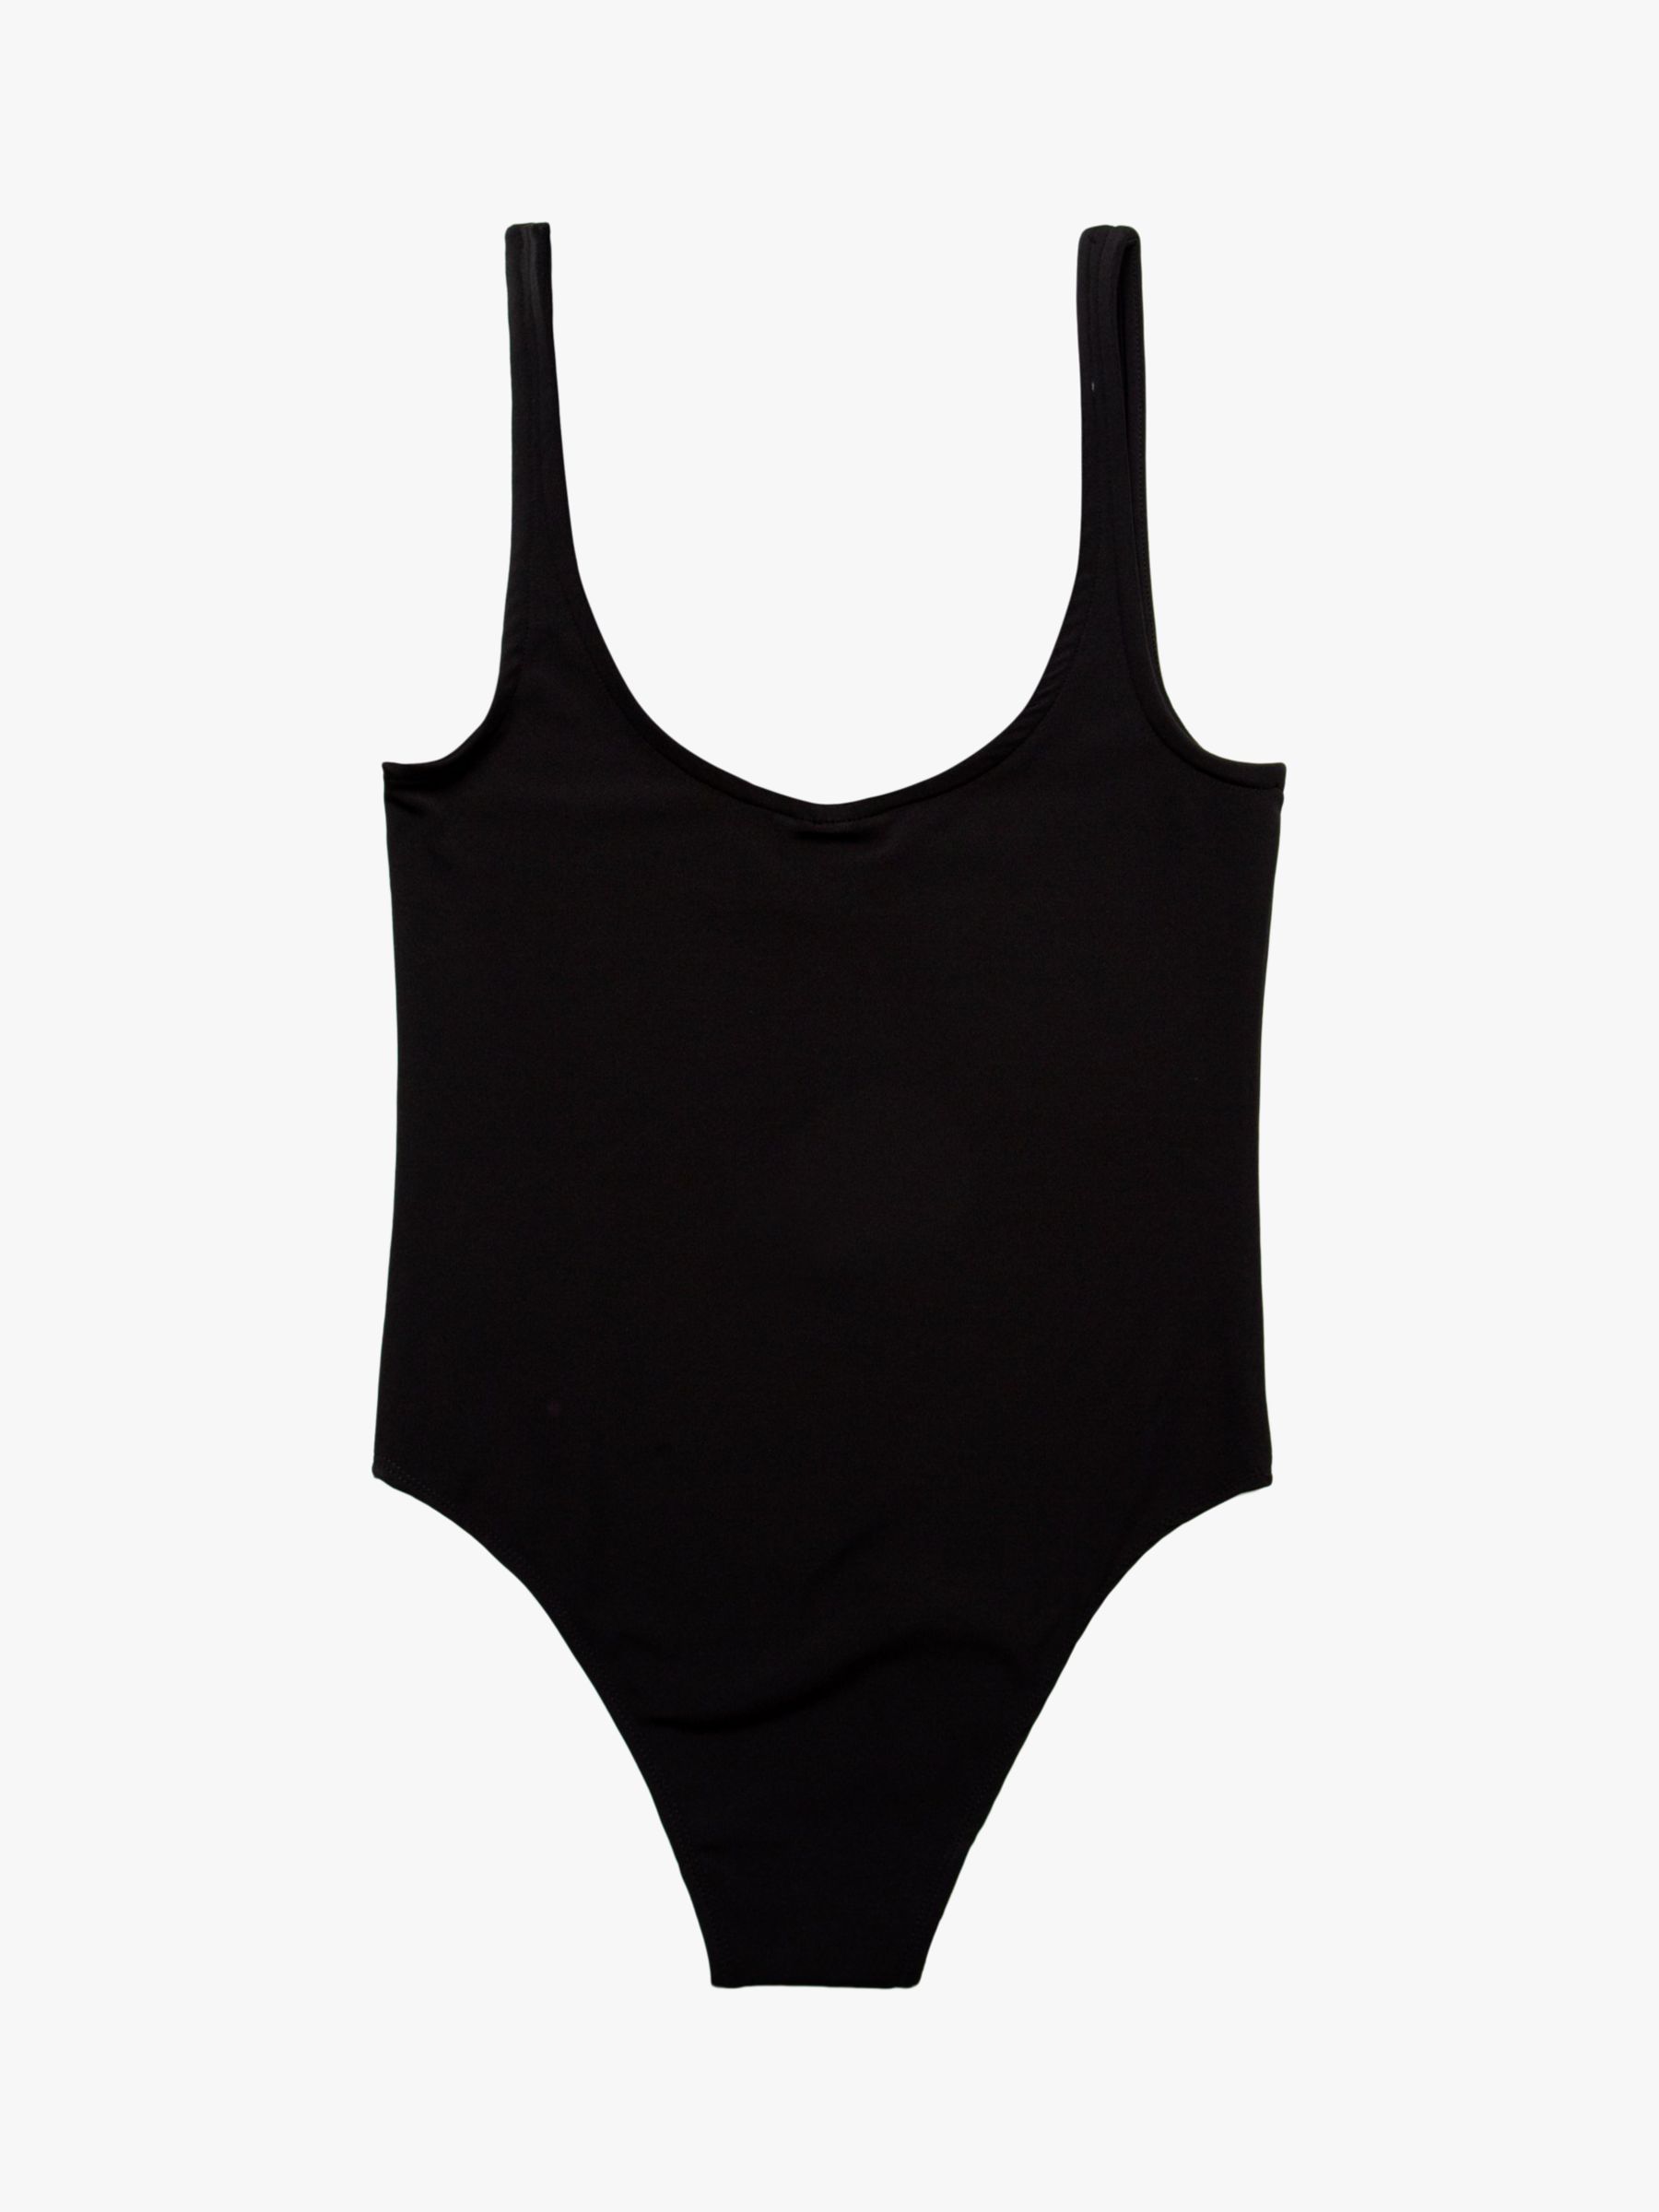 Hype Girls' Logo Swimsuit, Black